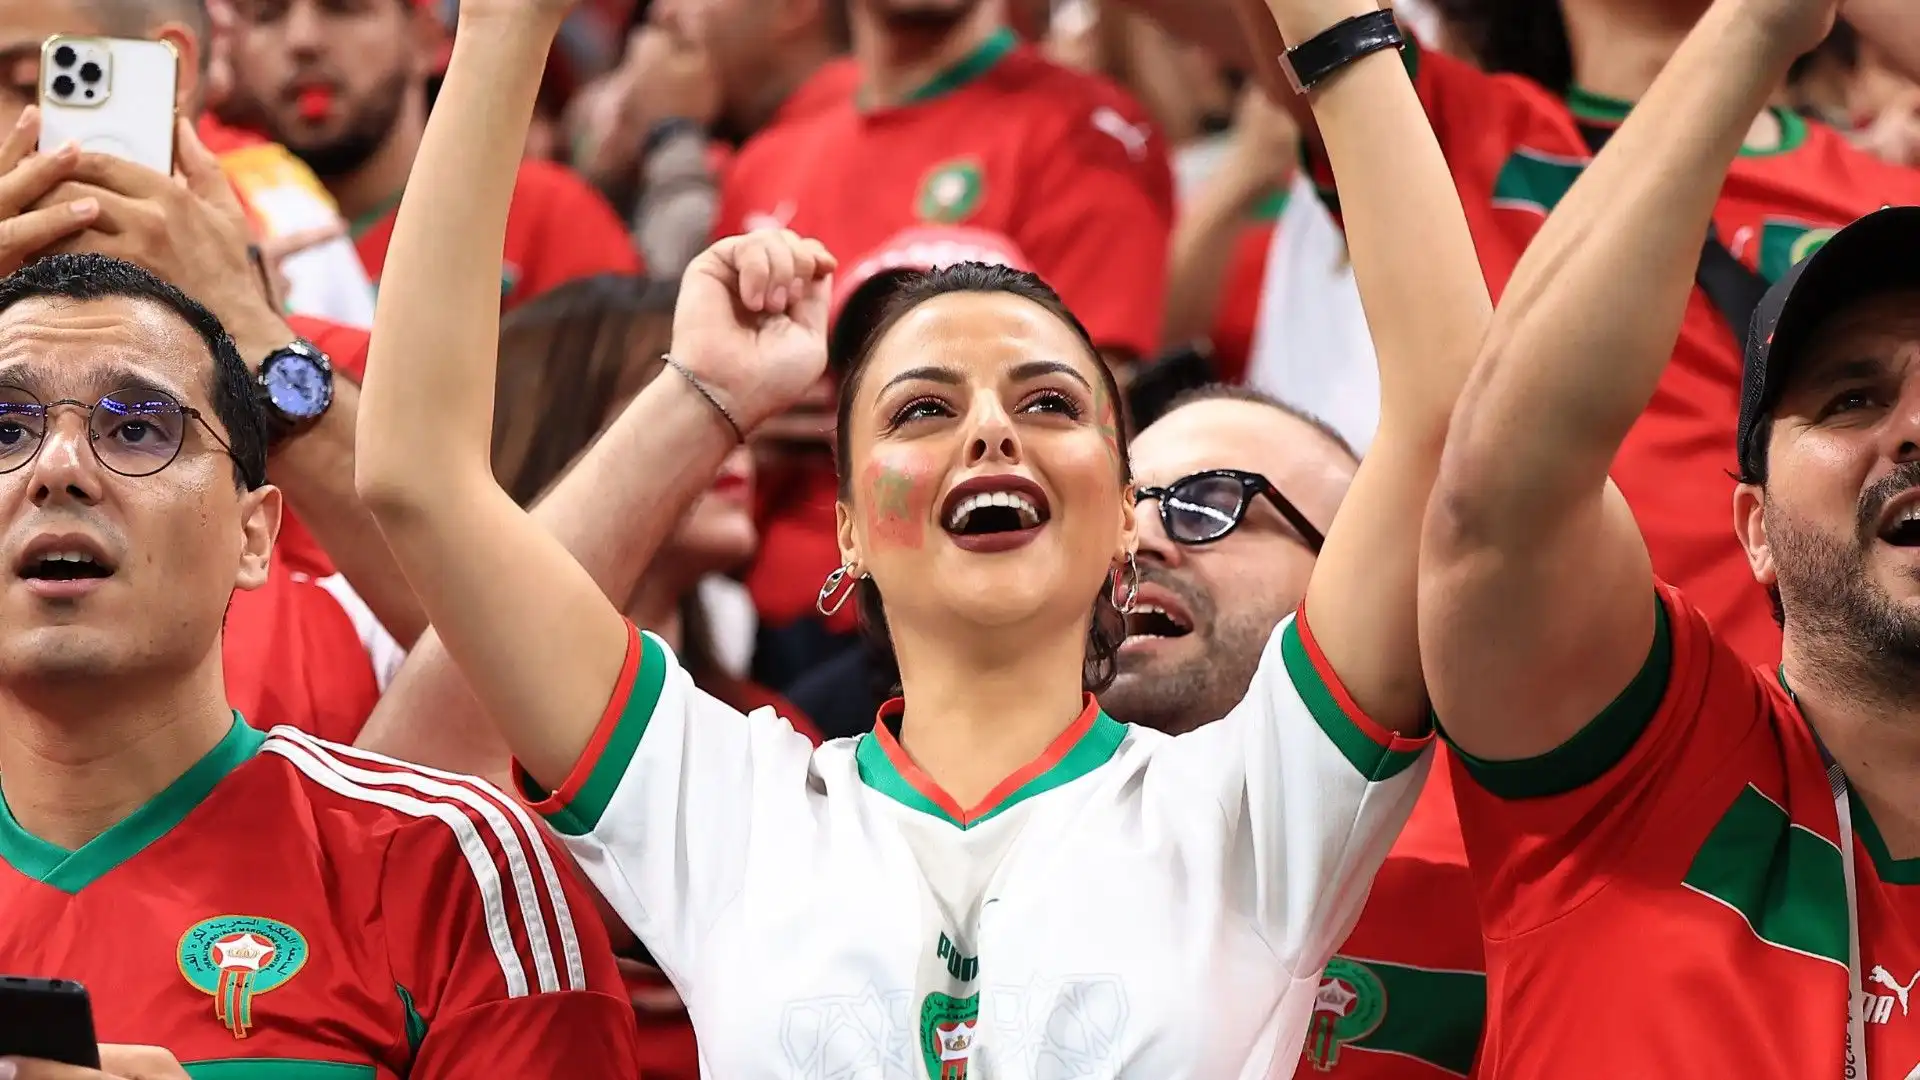 Francia-Marocco: grande festa tra i tifosi. Le immagini più belle